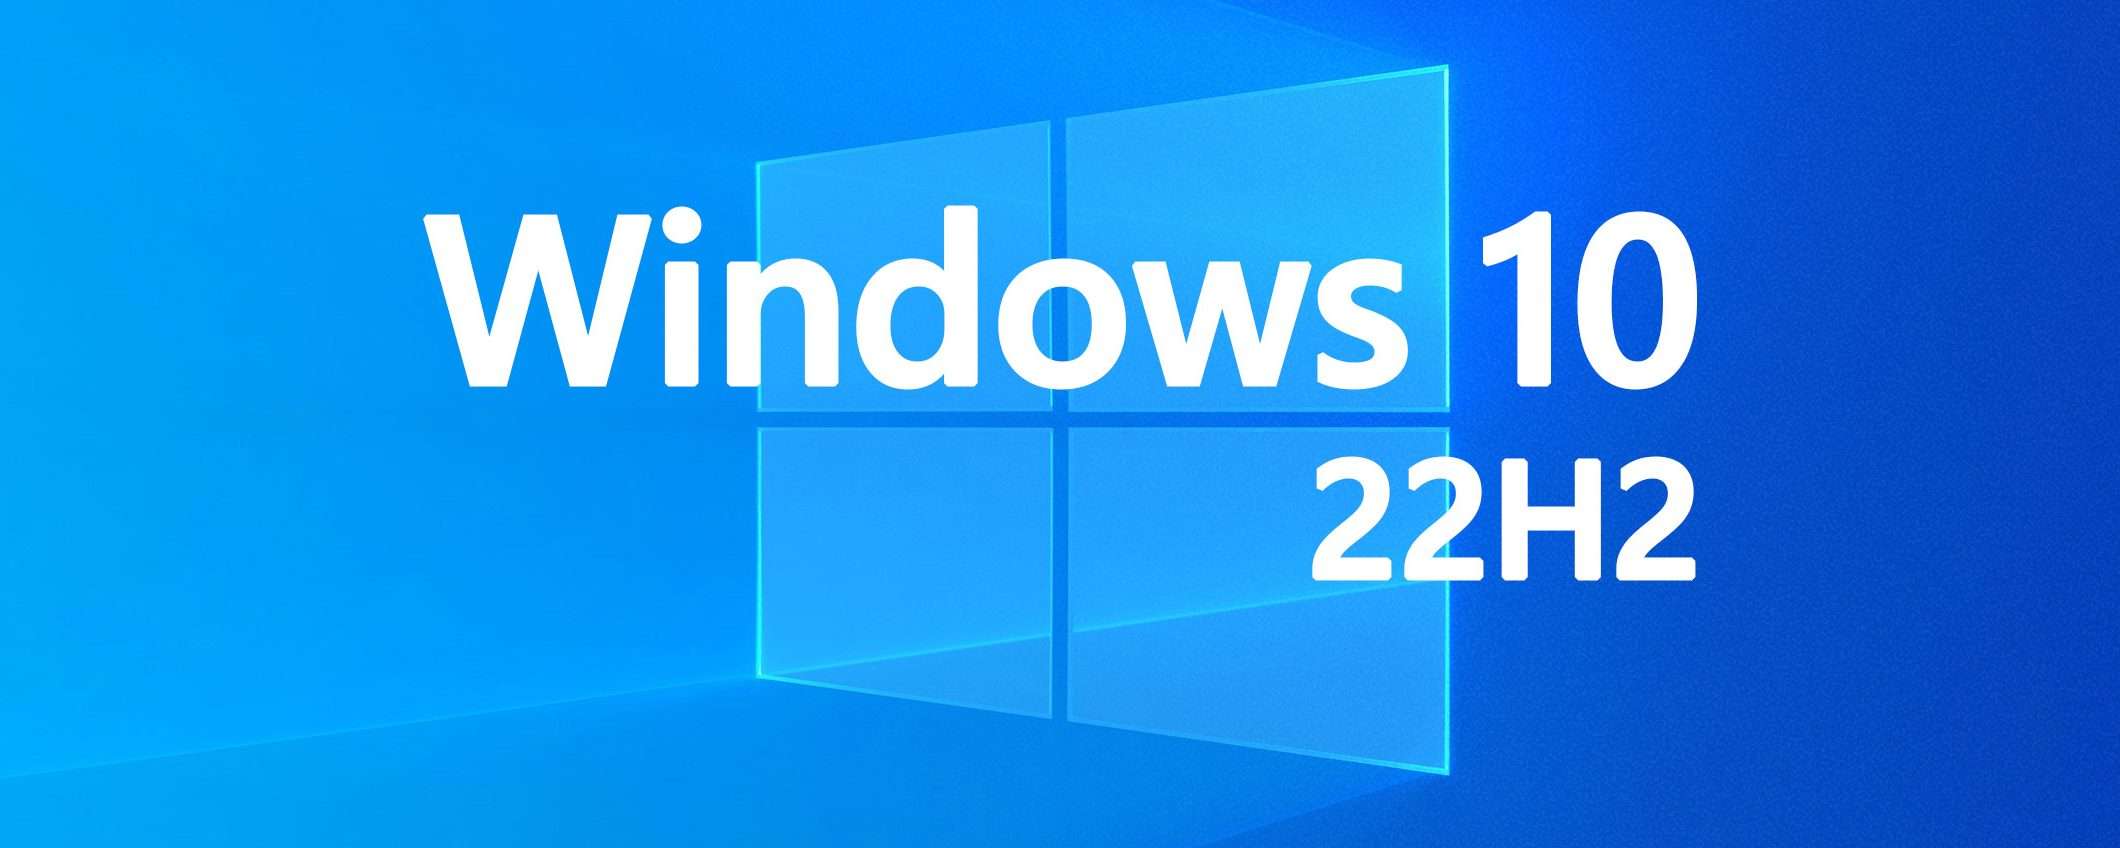 Windows 10 22H2: ci siamo quasi, spuntano le ISO